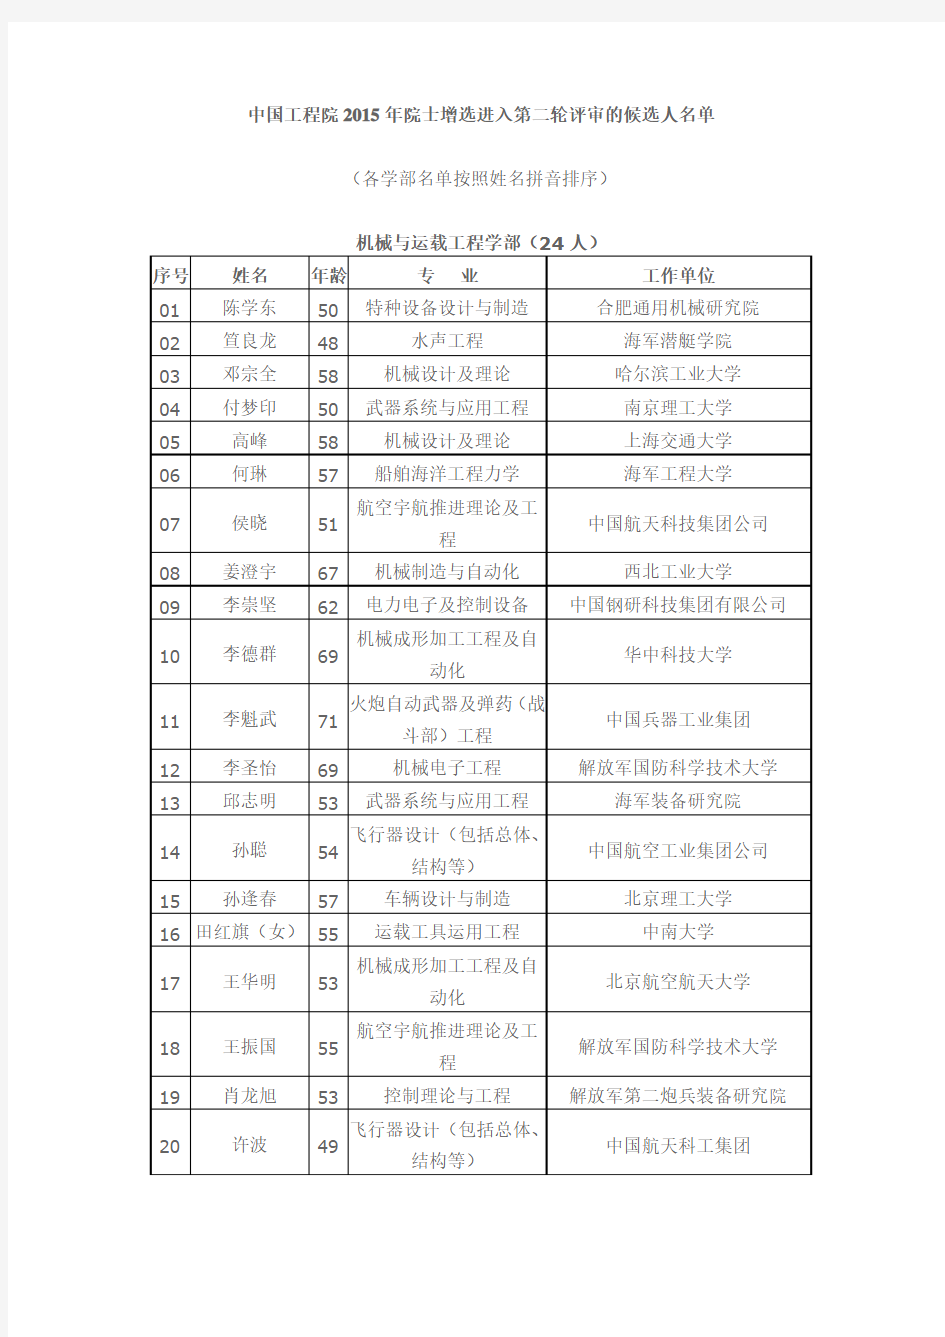 中国工程院2015年度院士增选进入第二轮评审的候选人名单